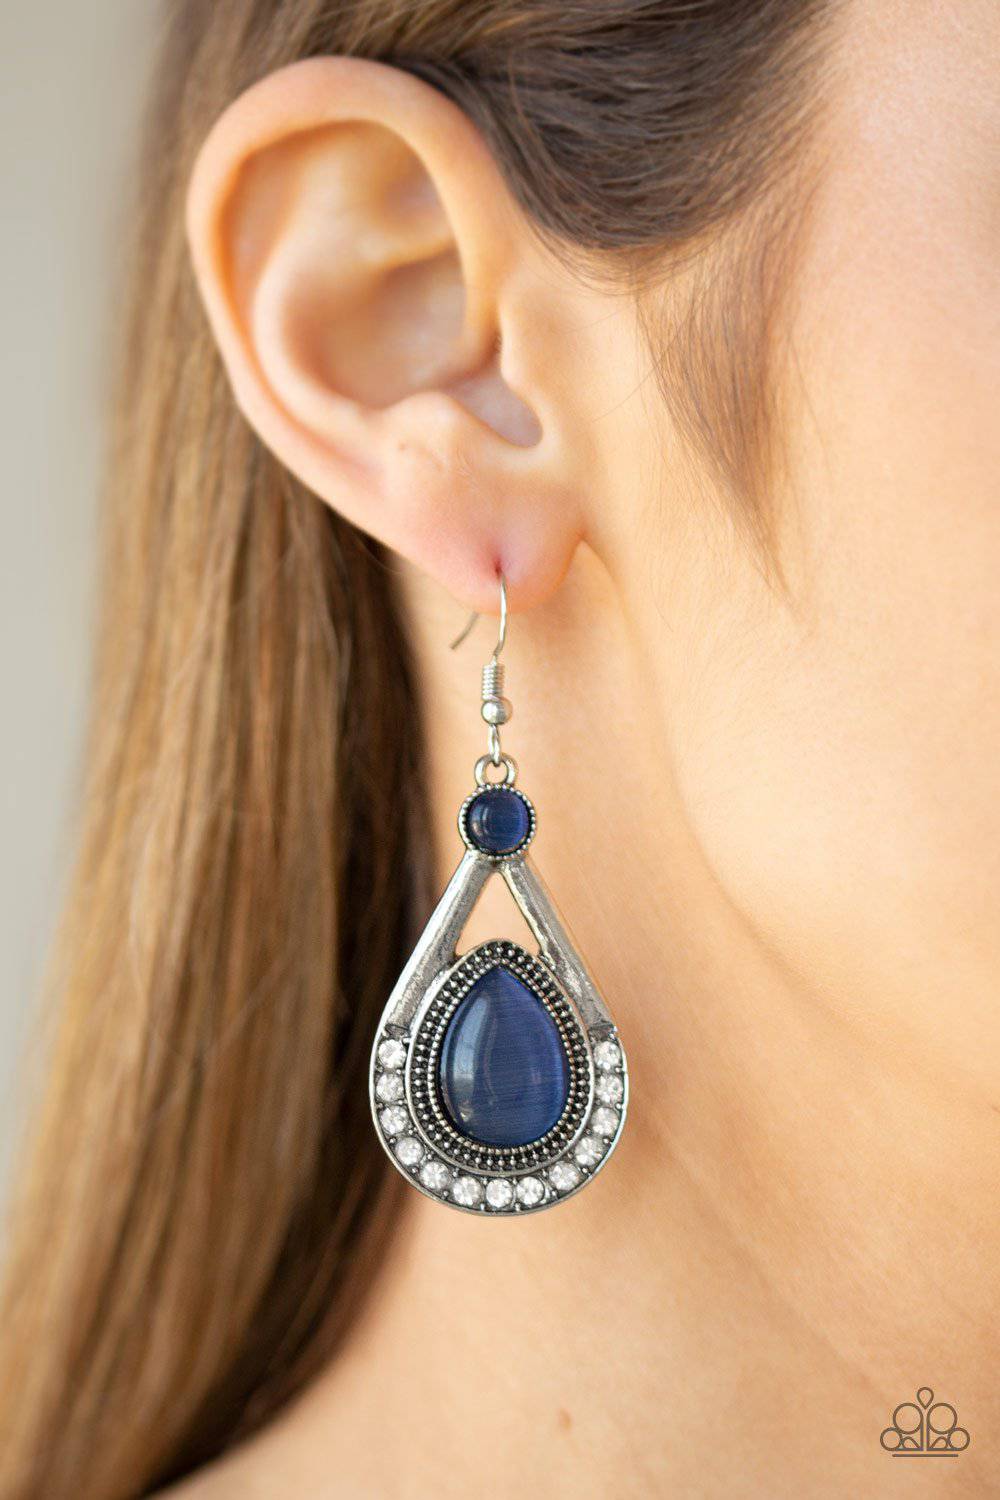 Pro Glow - Blue Cat's Eye Earrings - Paparazzi Accessories - GlaMarous Titi Jewels